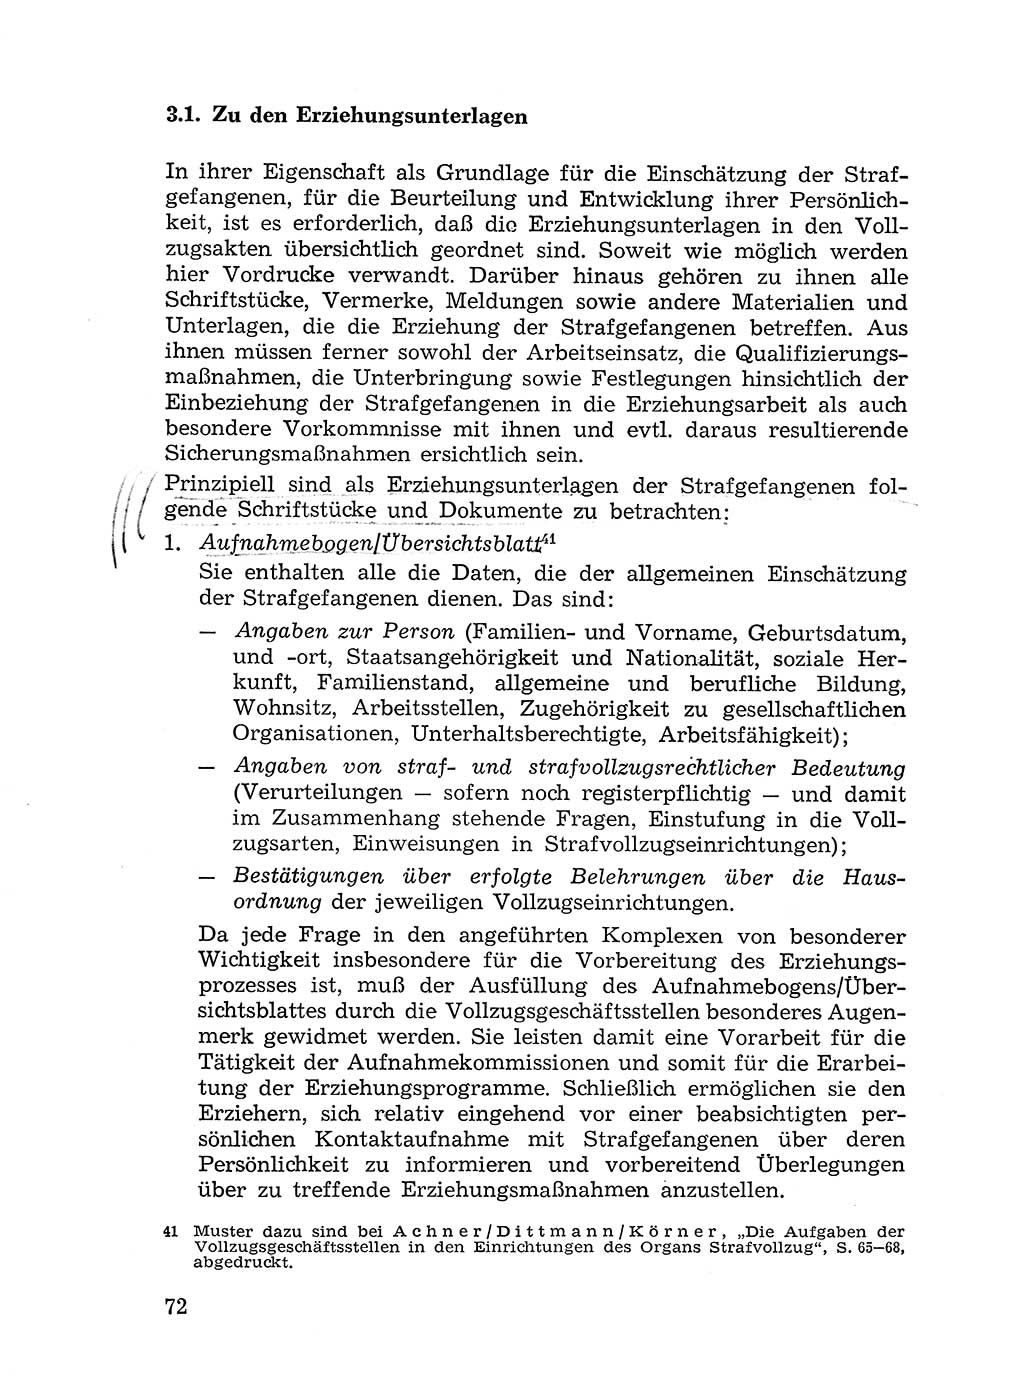 Sozialistischer Strafvollzug (SV) [Deutsche Demokratische Republik (DDR)] 1972, Seite 72 (Soz. SV DDR 1972, S. 72)